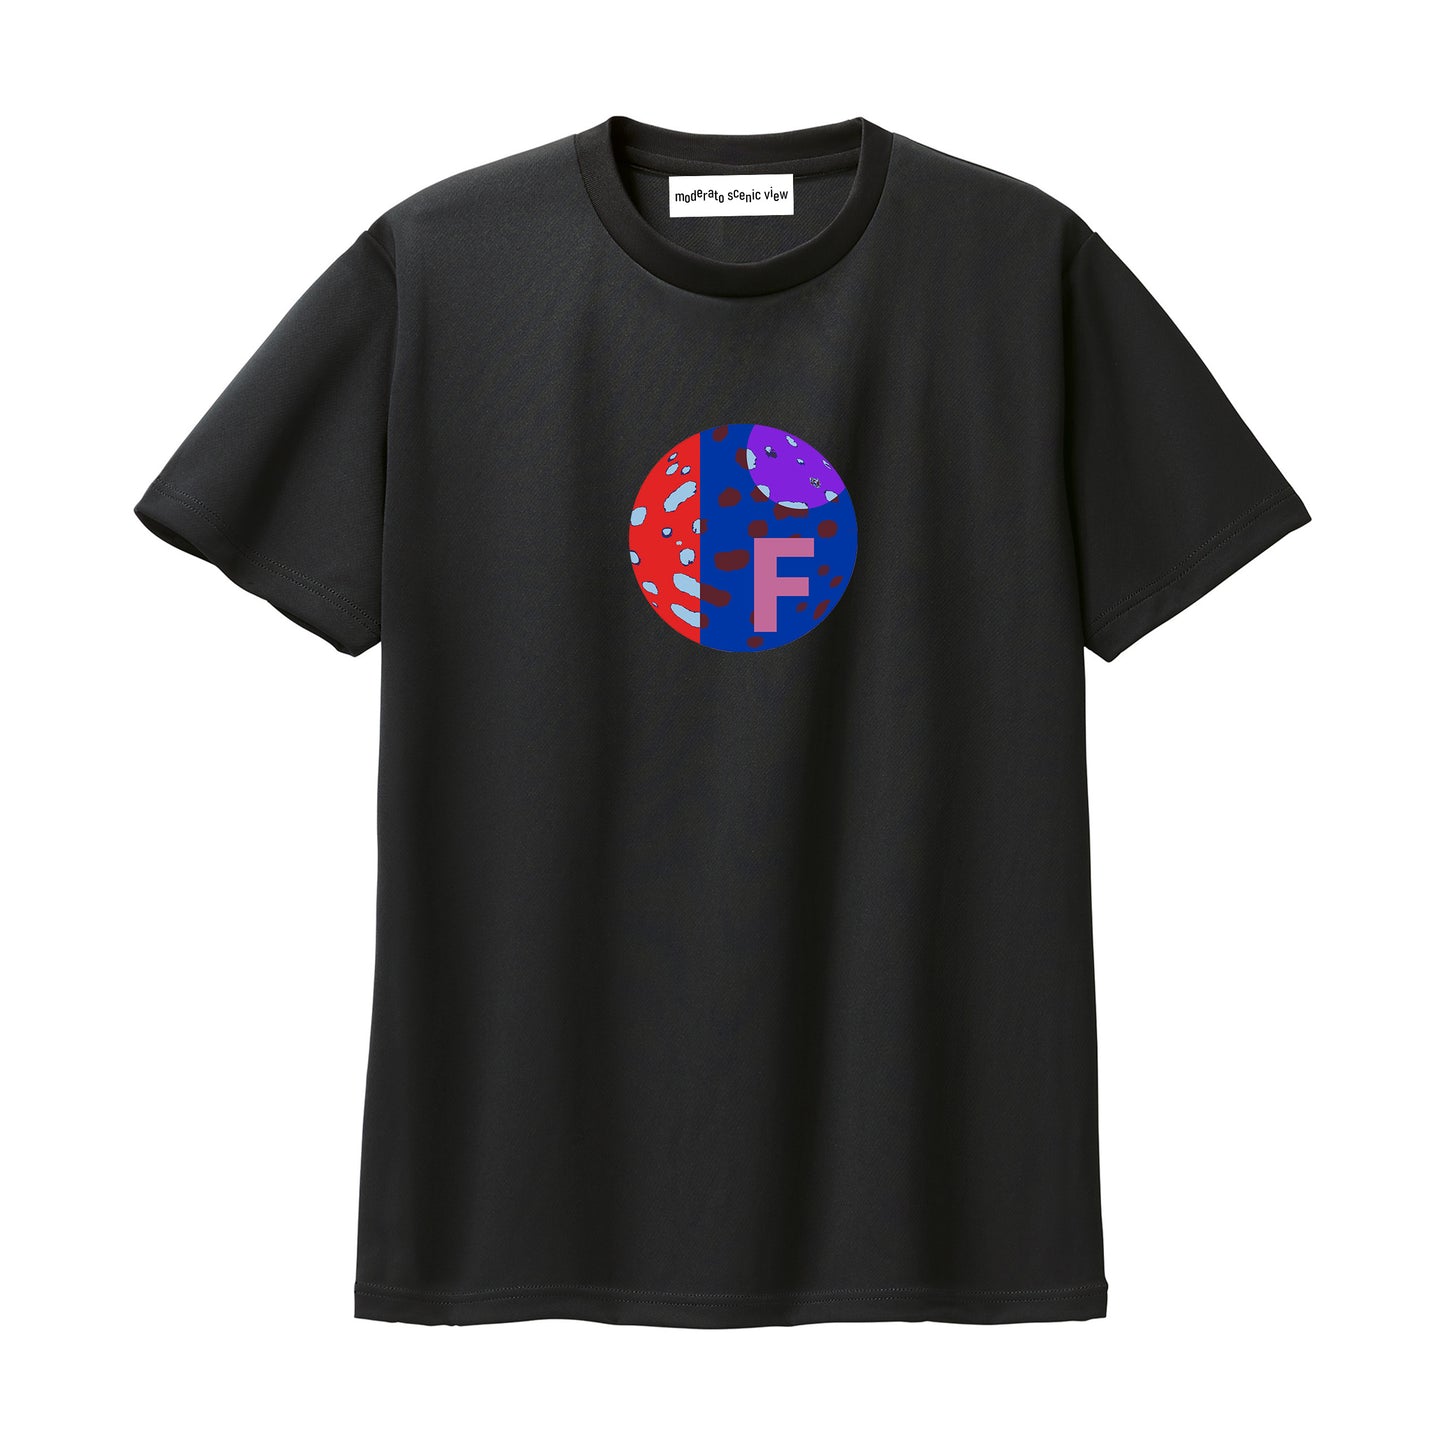 [moderato scenic view] T-shirts [F globe]